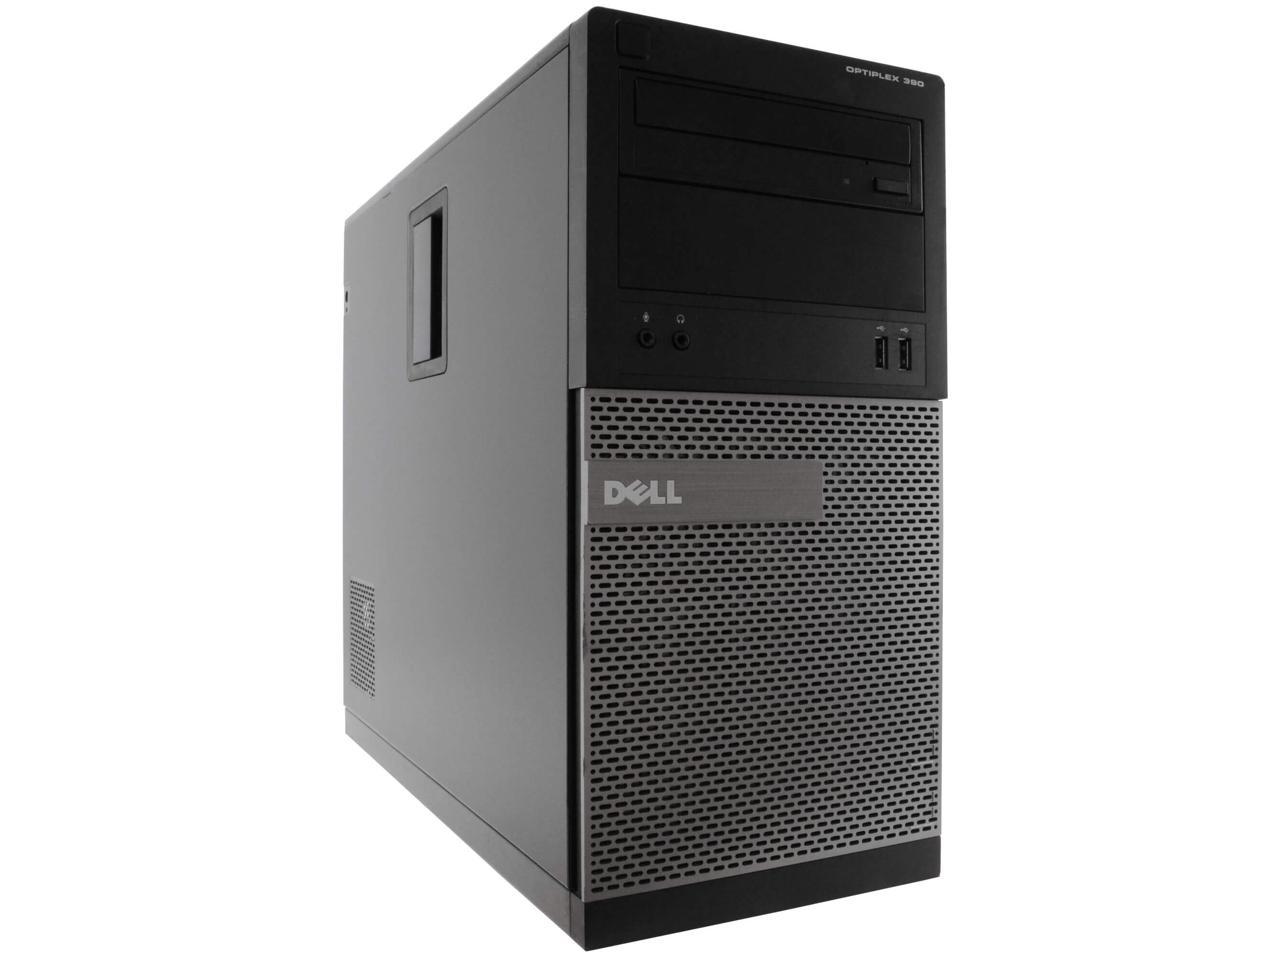 Dell Dell 390 Tower Computer PC, 3.20 GHz Intel i5 Quad Core Gen 2, 8GB DDR3 RAM, 500GB SATA Hard Drive, Windows 10 Home 64 bit (Grade B)